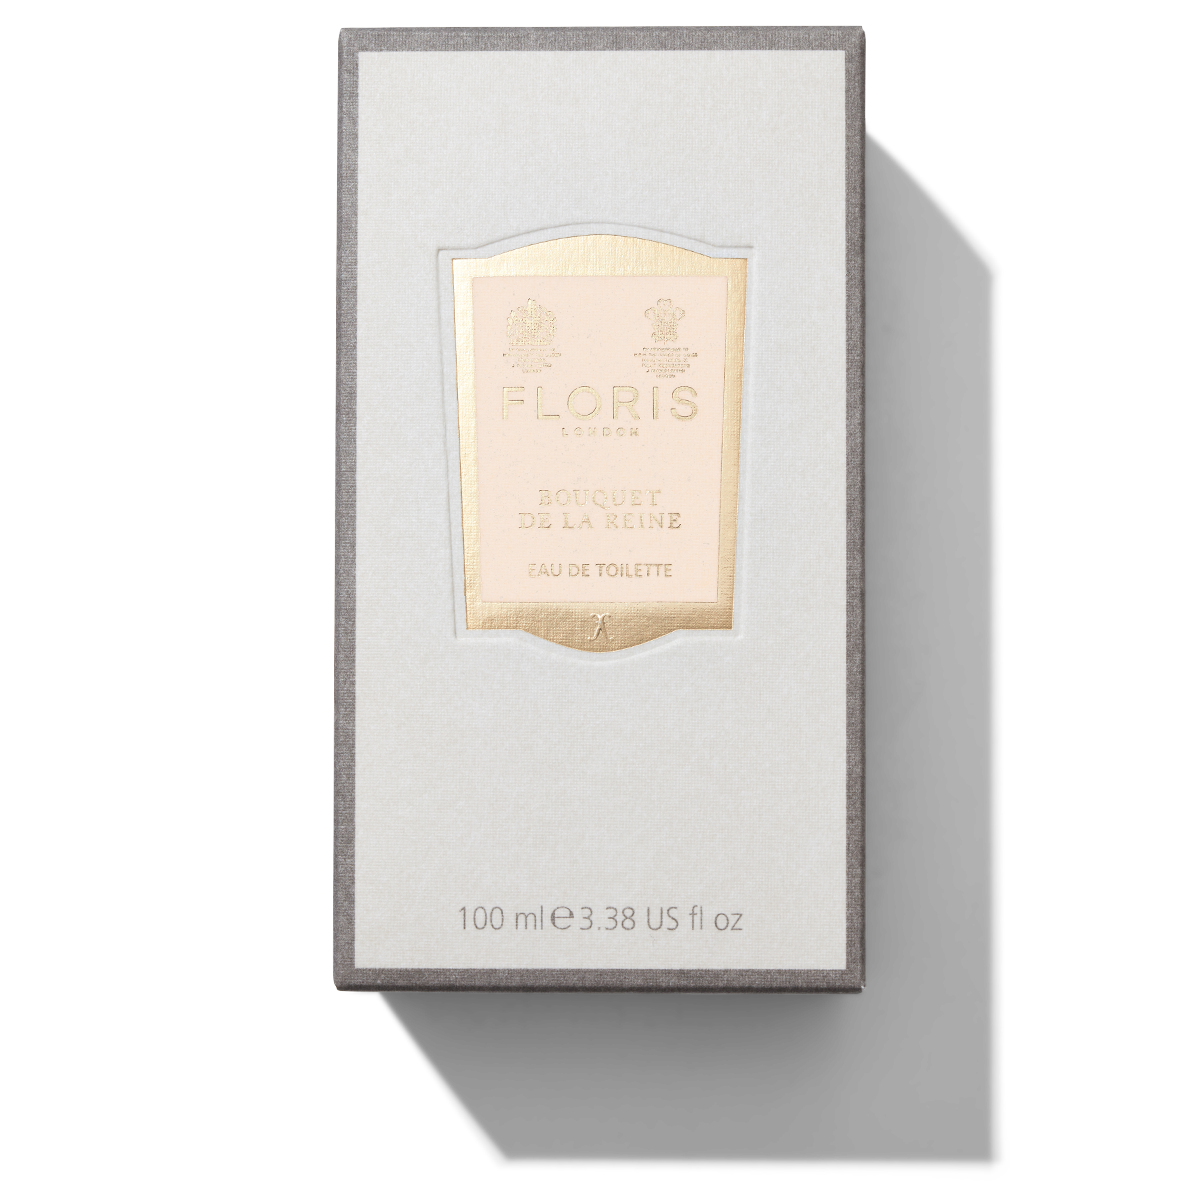 100ml White and Grey box with Golden Bouquet De La Reine label